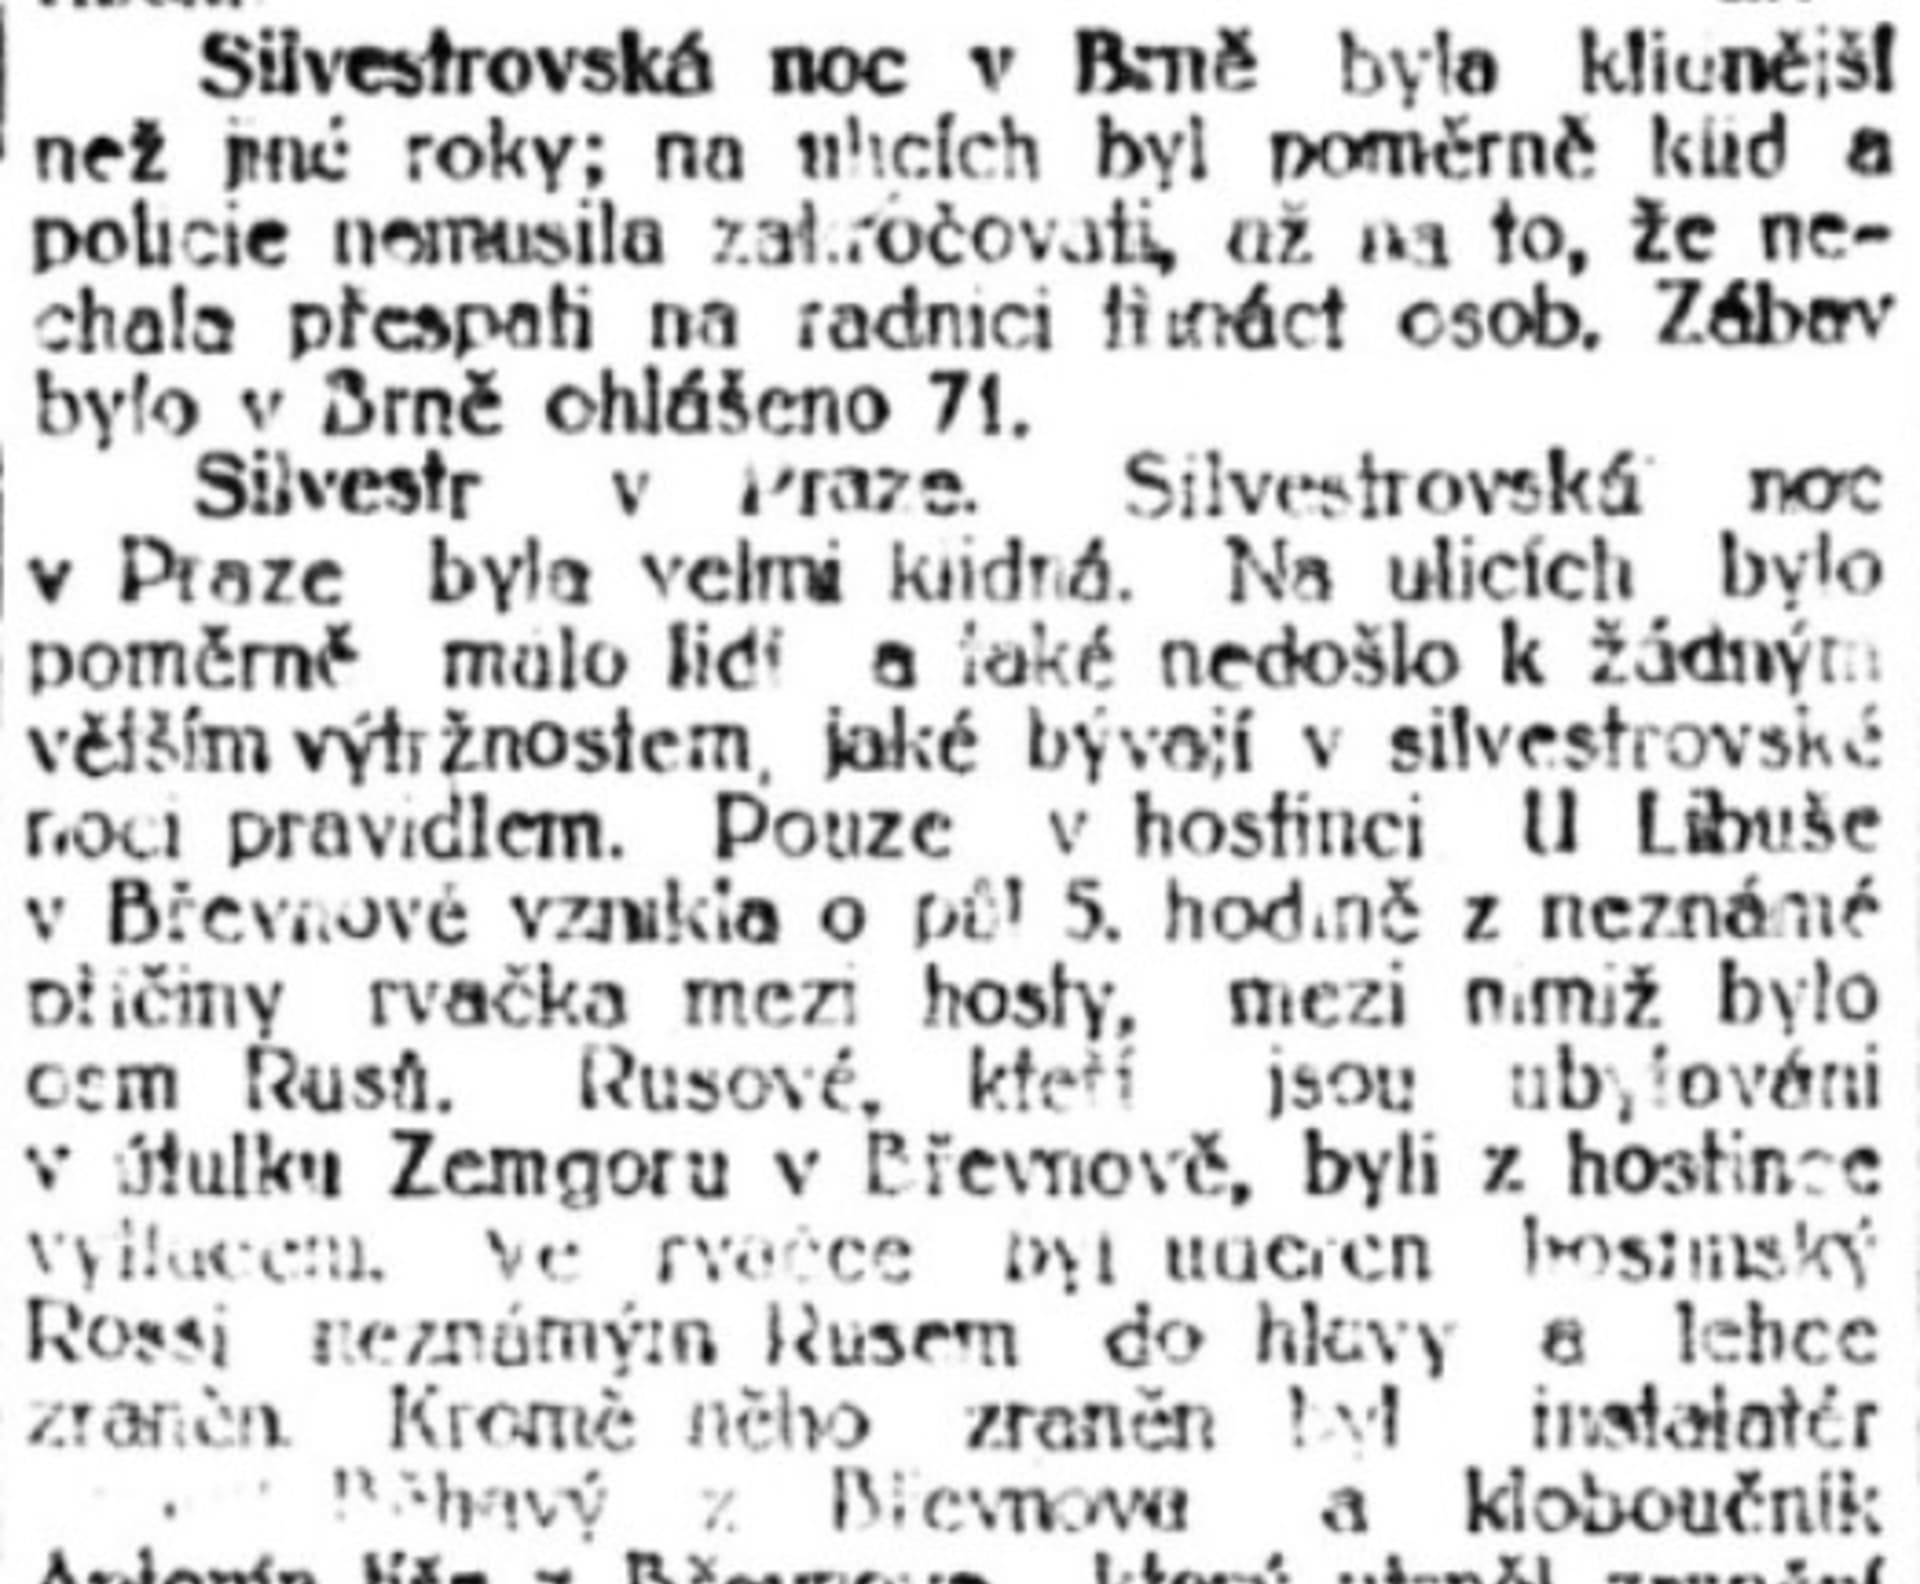 Policejní zpráva o Slivestru 1923 v Praze a Brně.